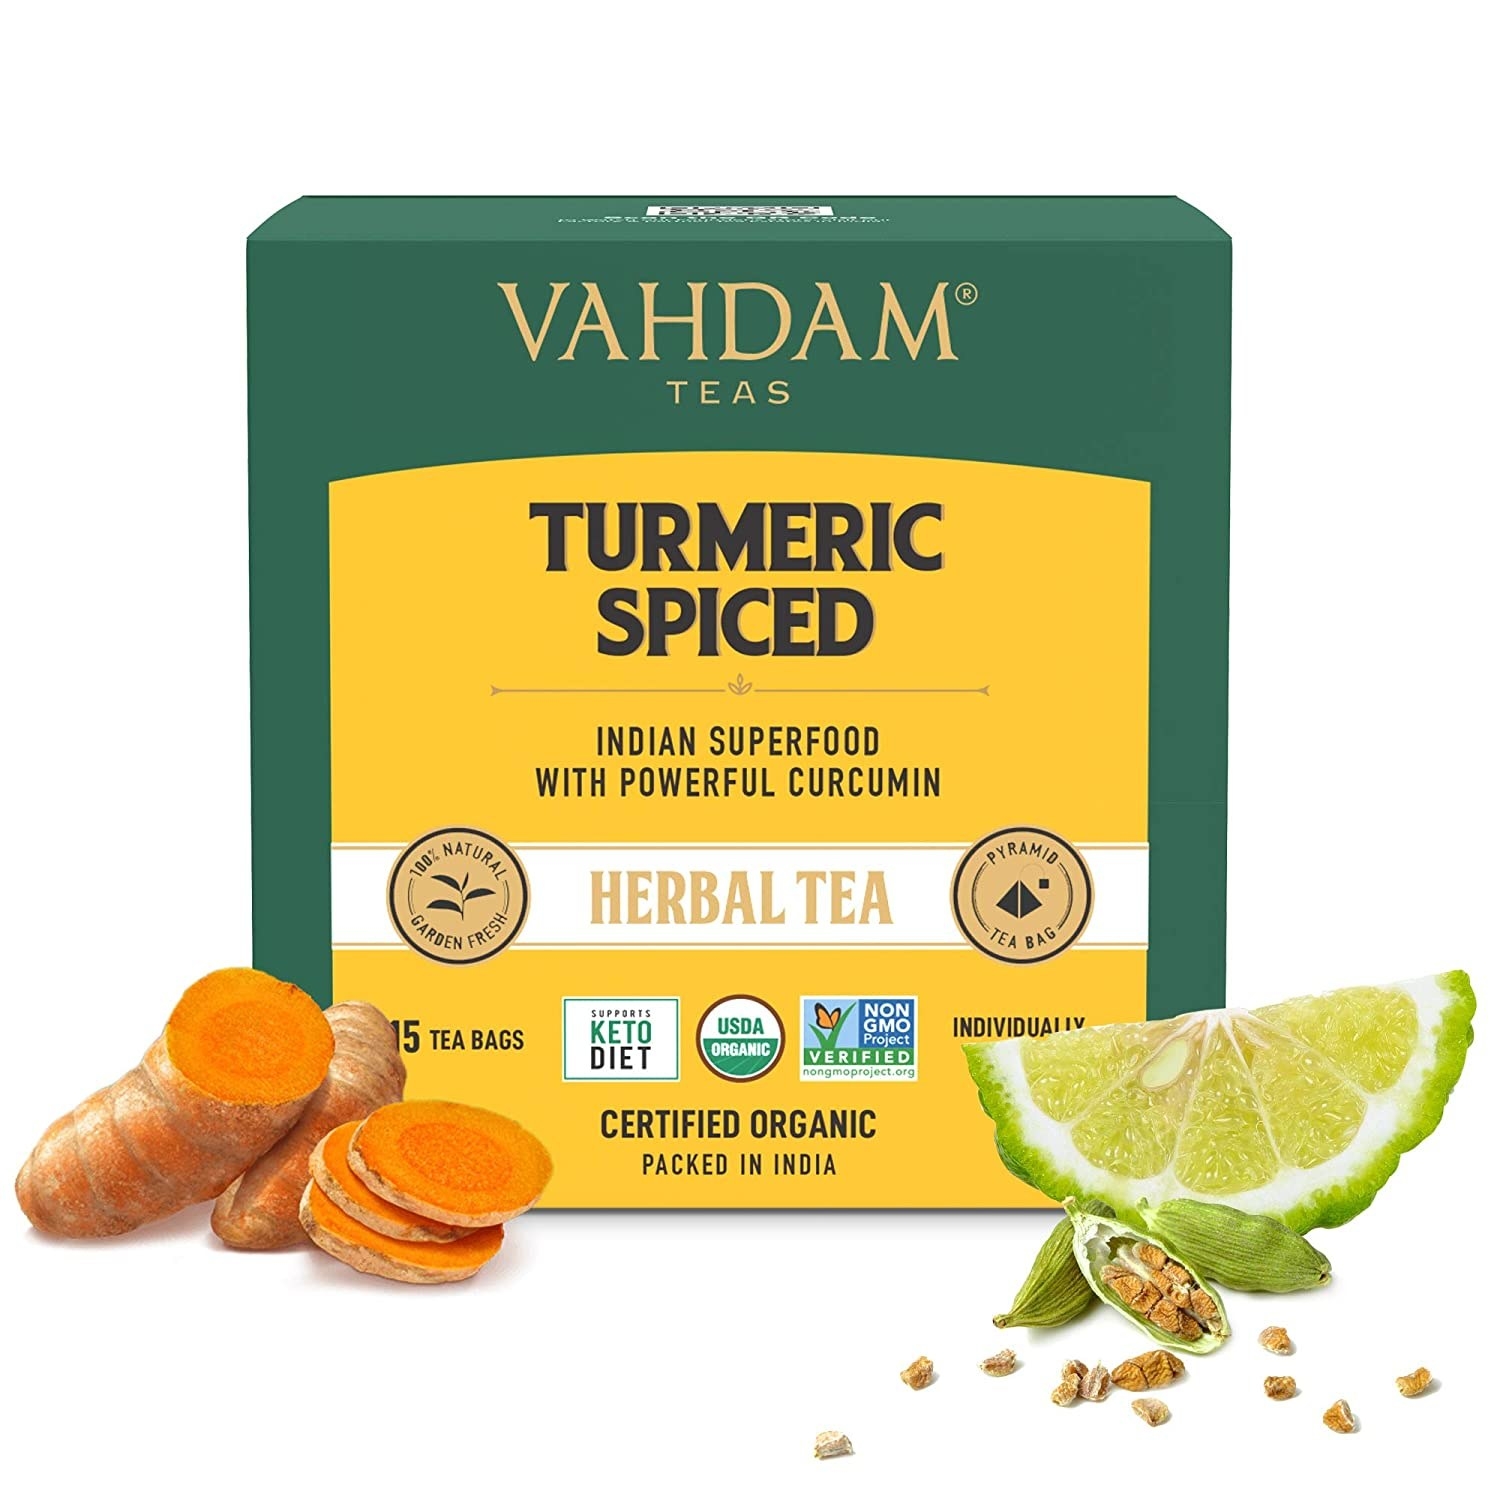 A box of Turmeric Spiced Tea from Vahdam.